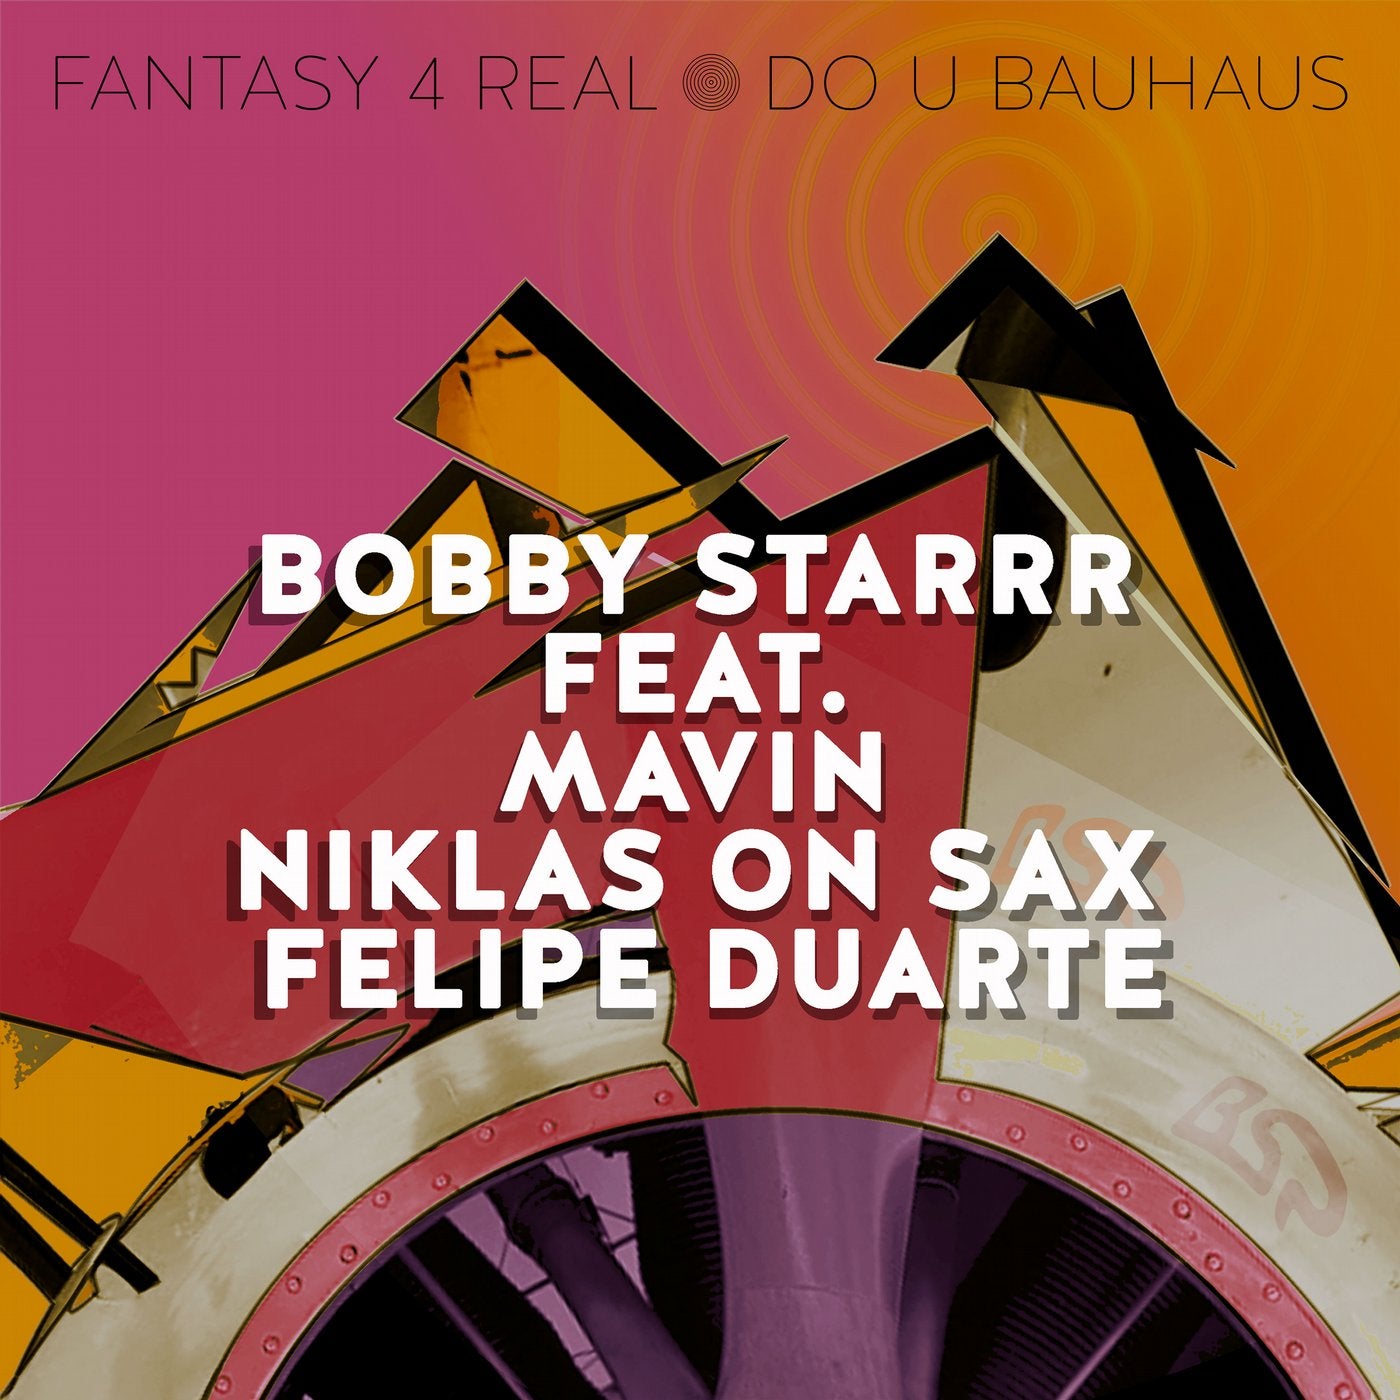 Fantasy 4 Real / Do U Bauhaus